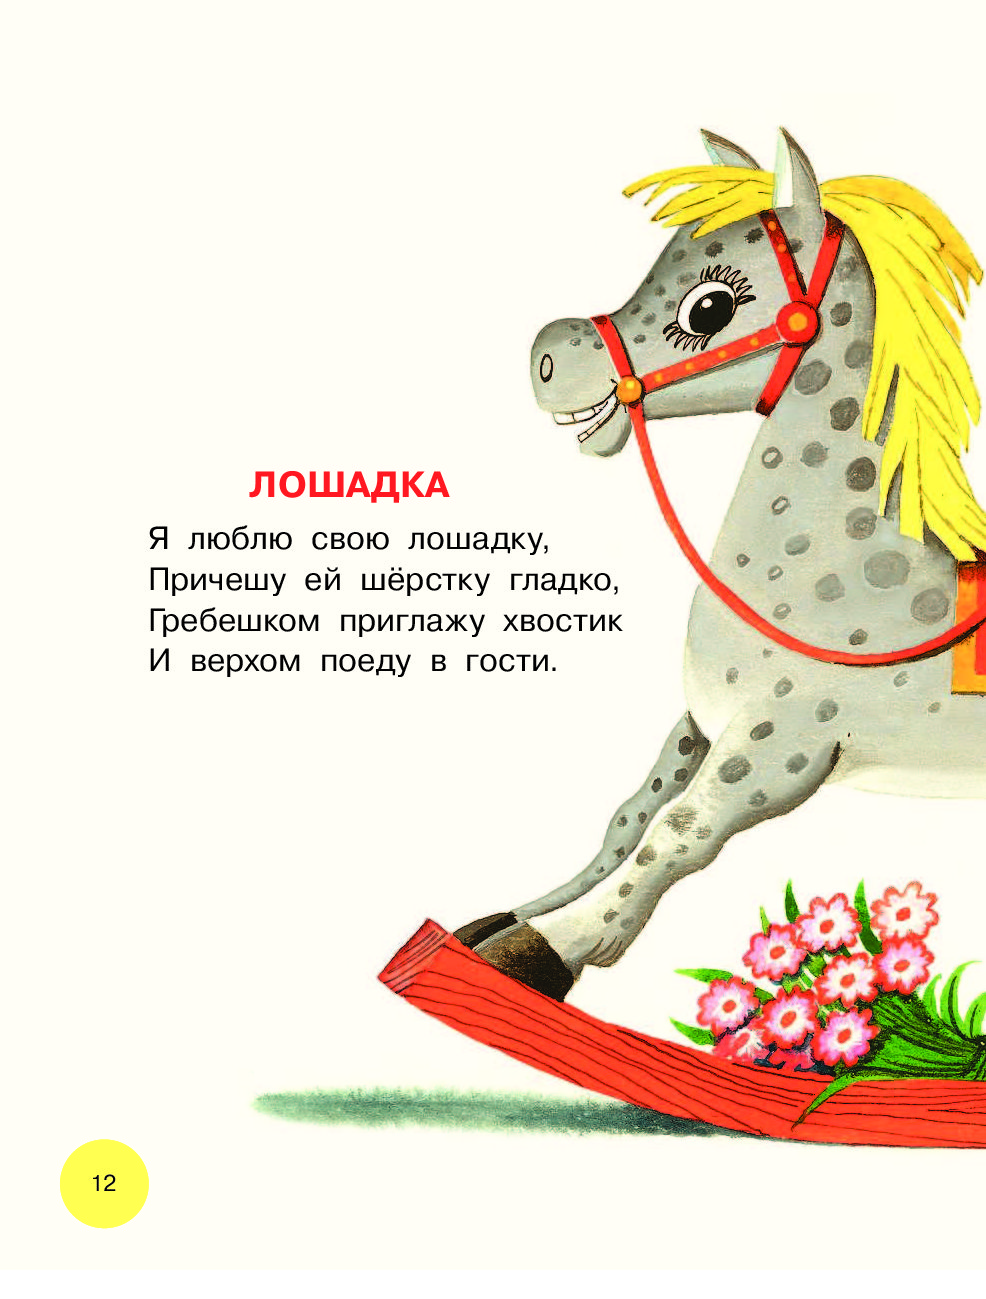 Розовый конь стихотворение. Я люблю свою лошадку. Я люблю свою лошадку стих. Лошадка Барто стихотворение. Люблю свою лошадку причешу ей шерстку гладко.